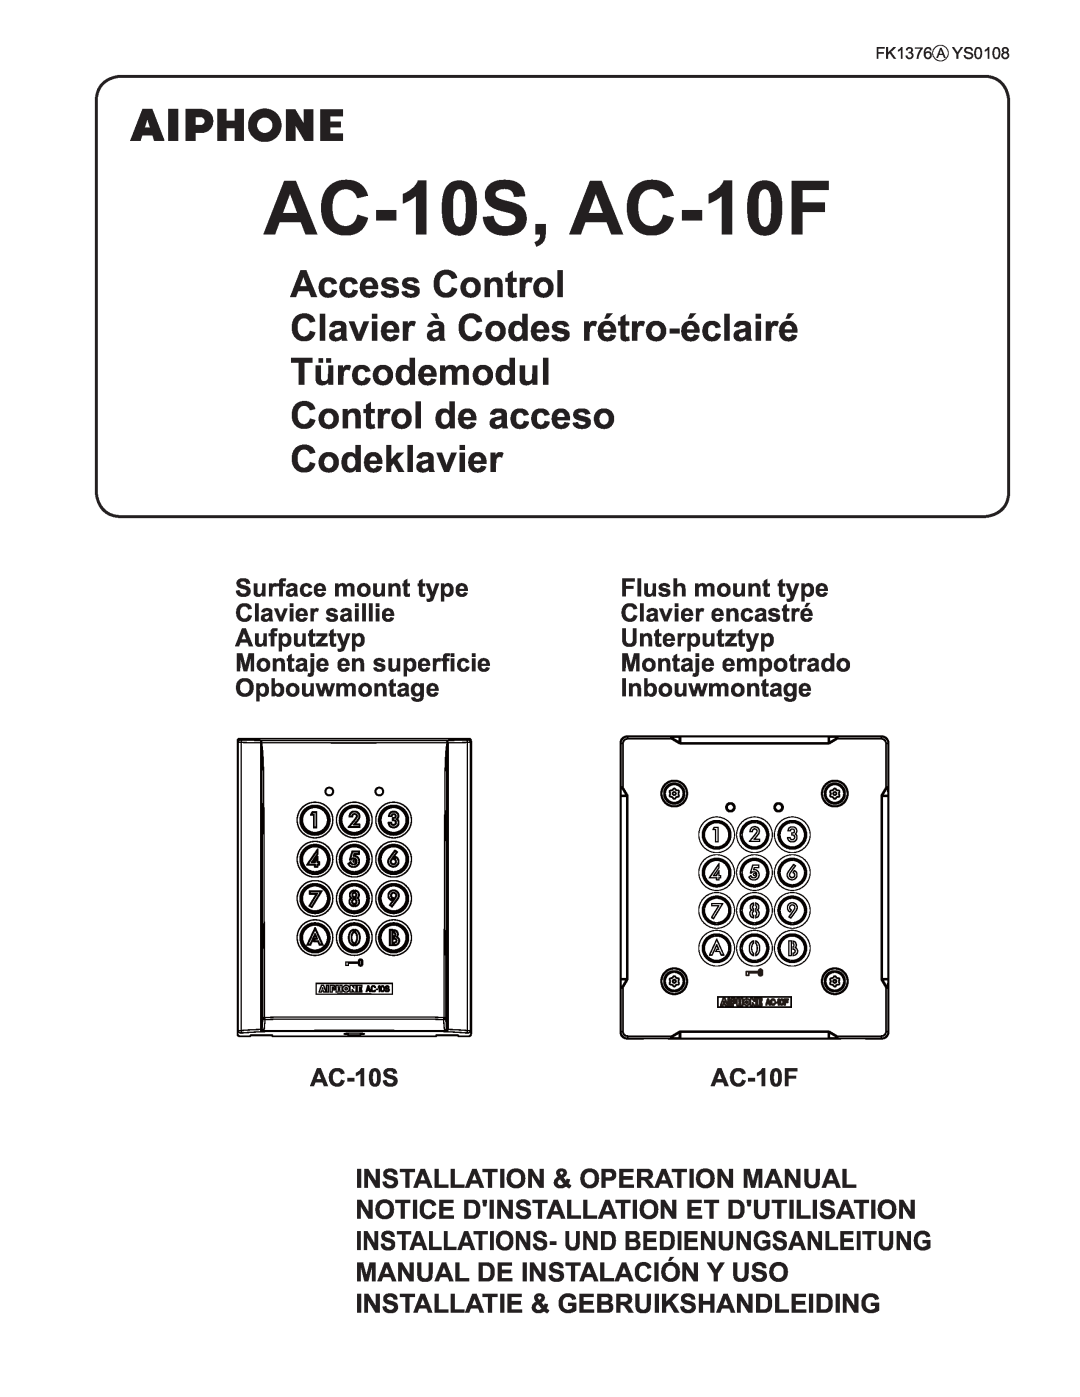 Aiphone operation manual AC-10S, AC-10F, Access Control Clavier à Codes rétro-éclairé 